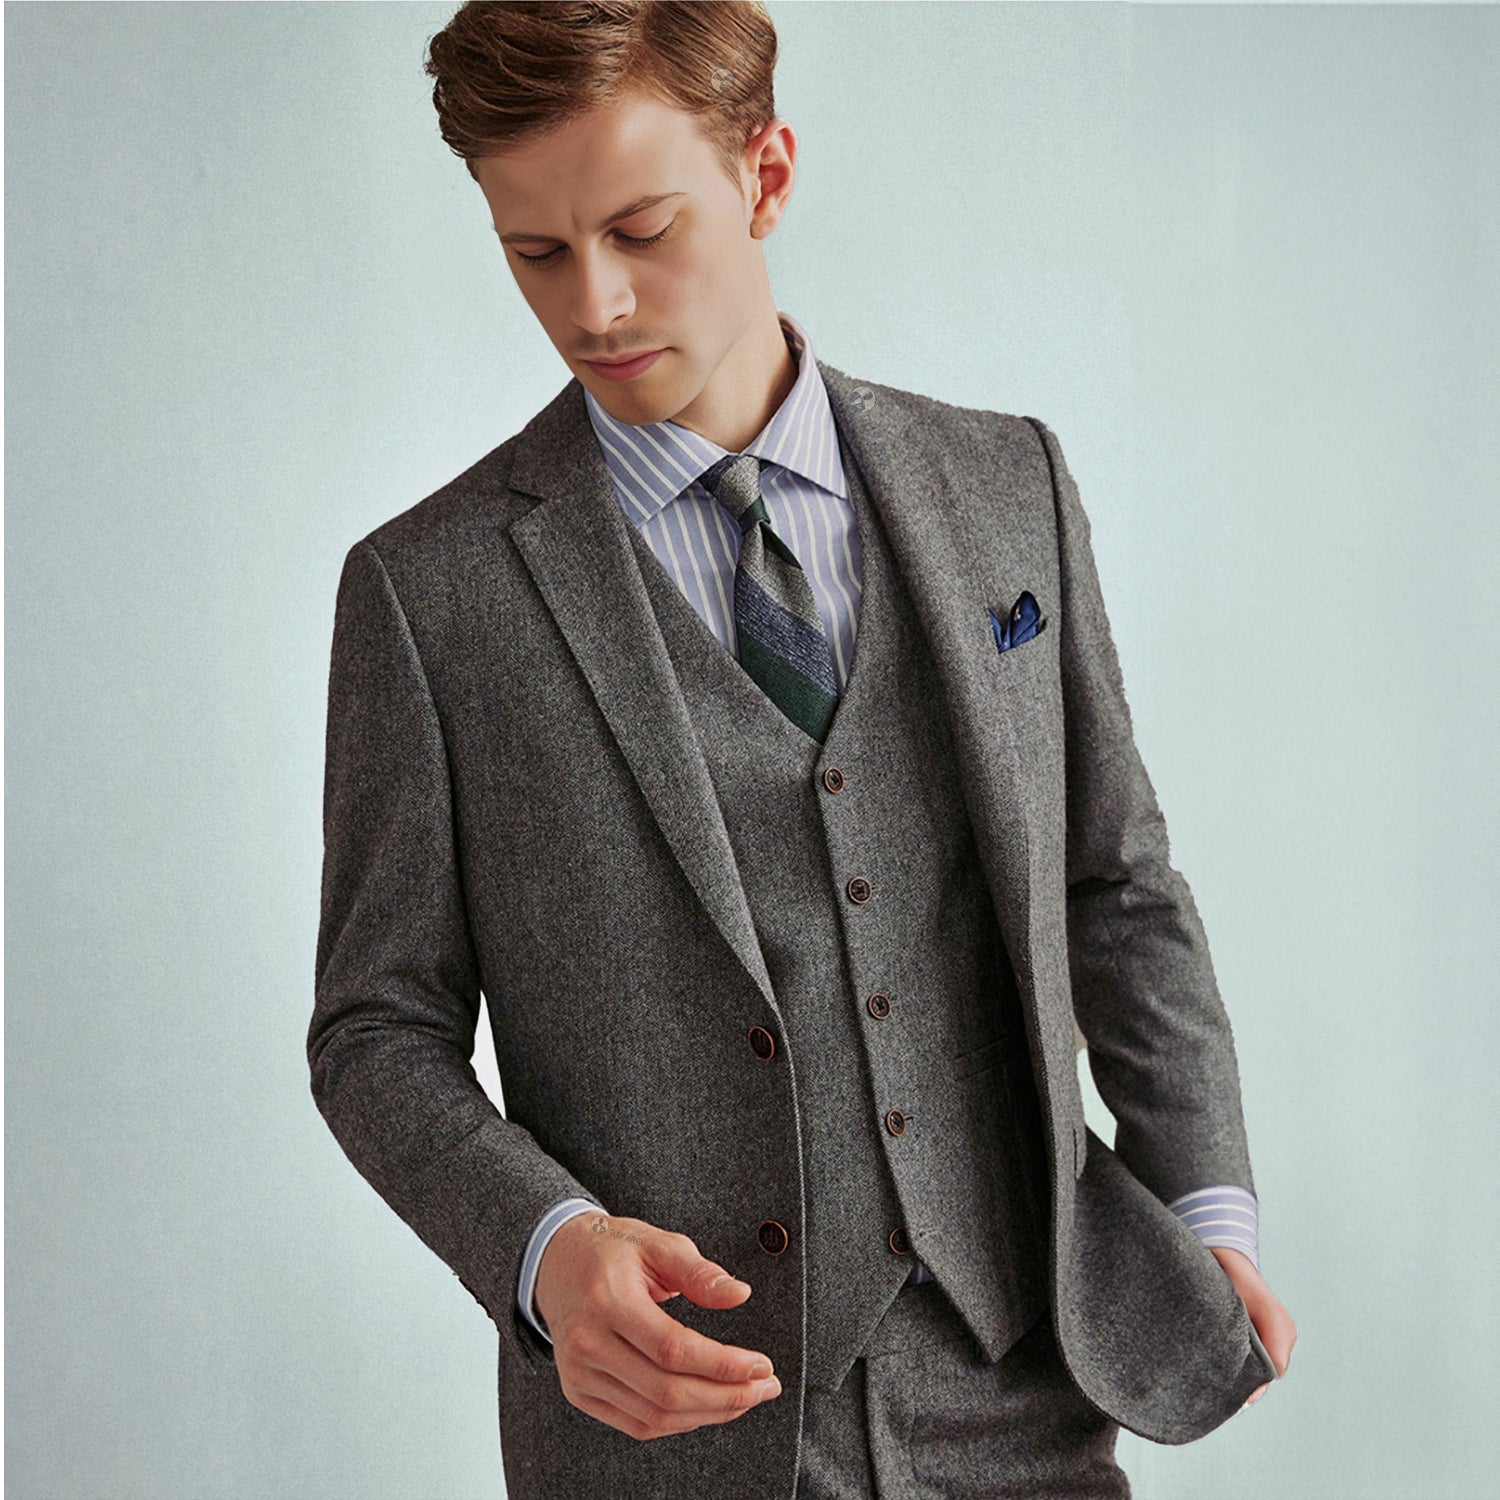 Vintage Herringbone Tweed Suit